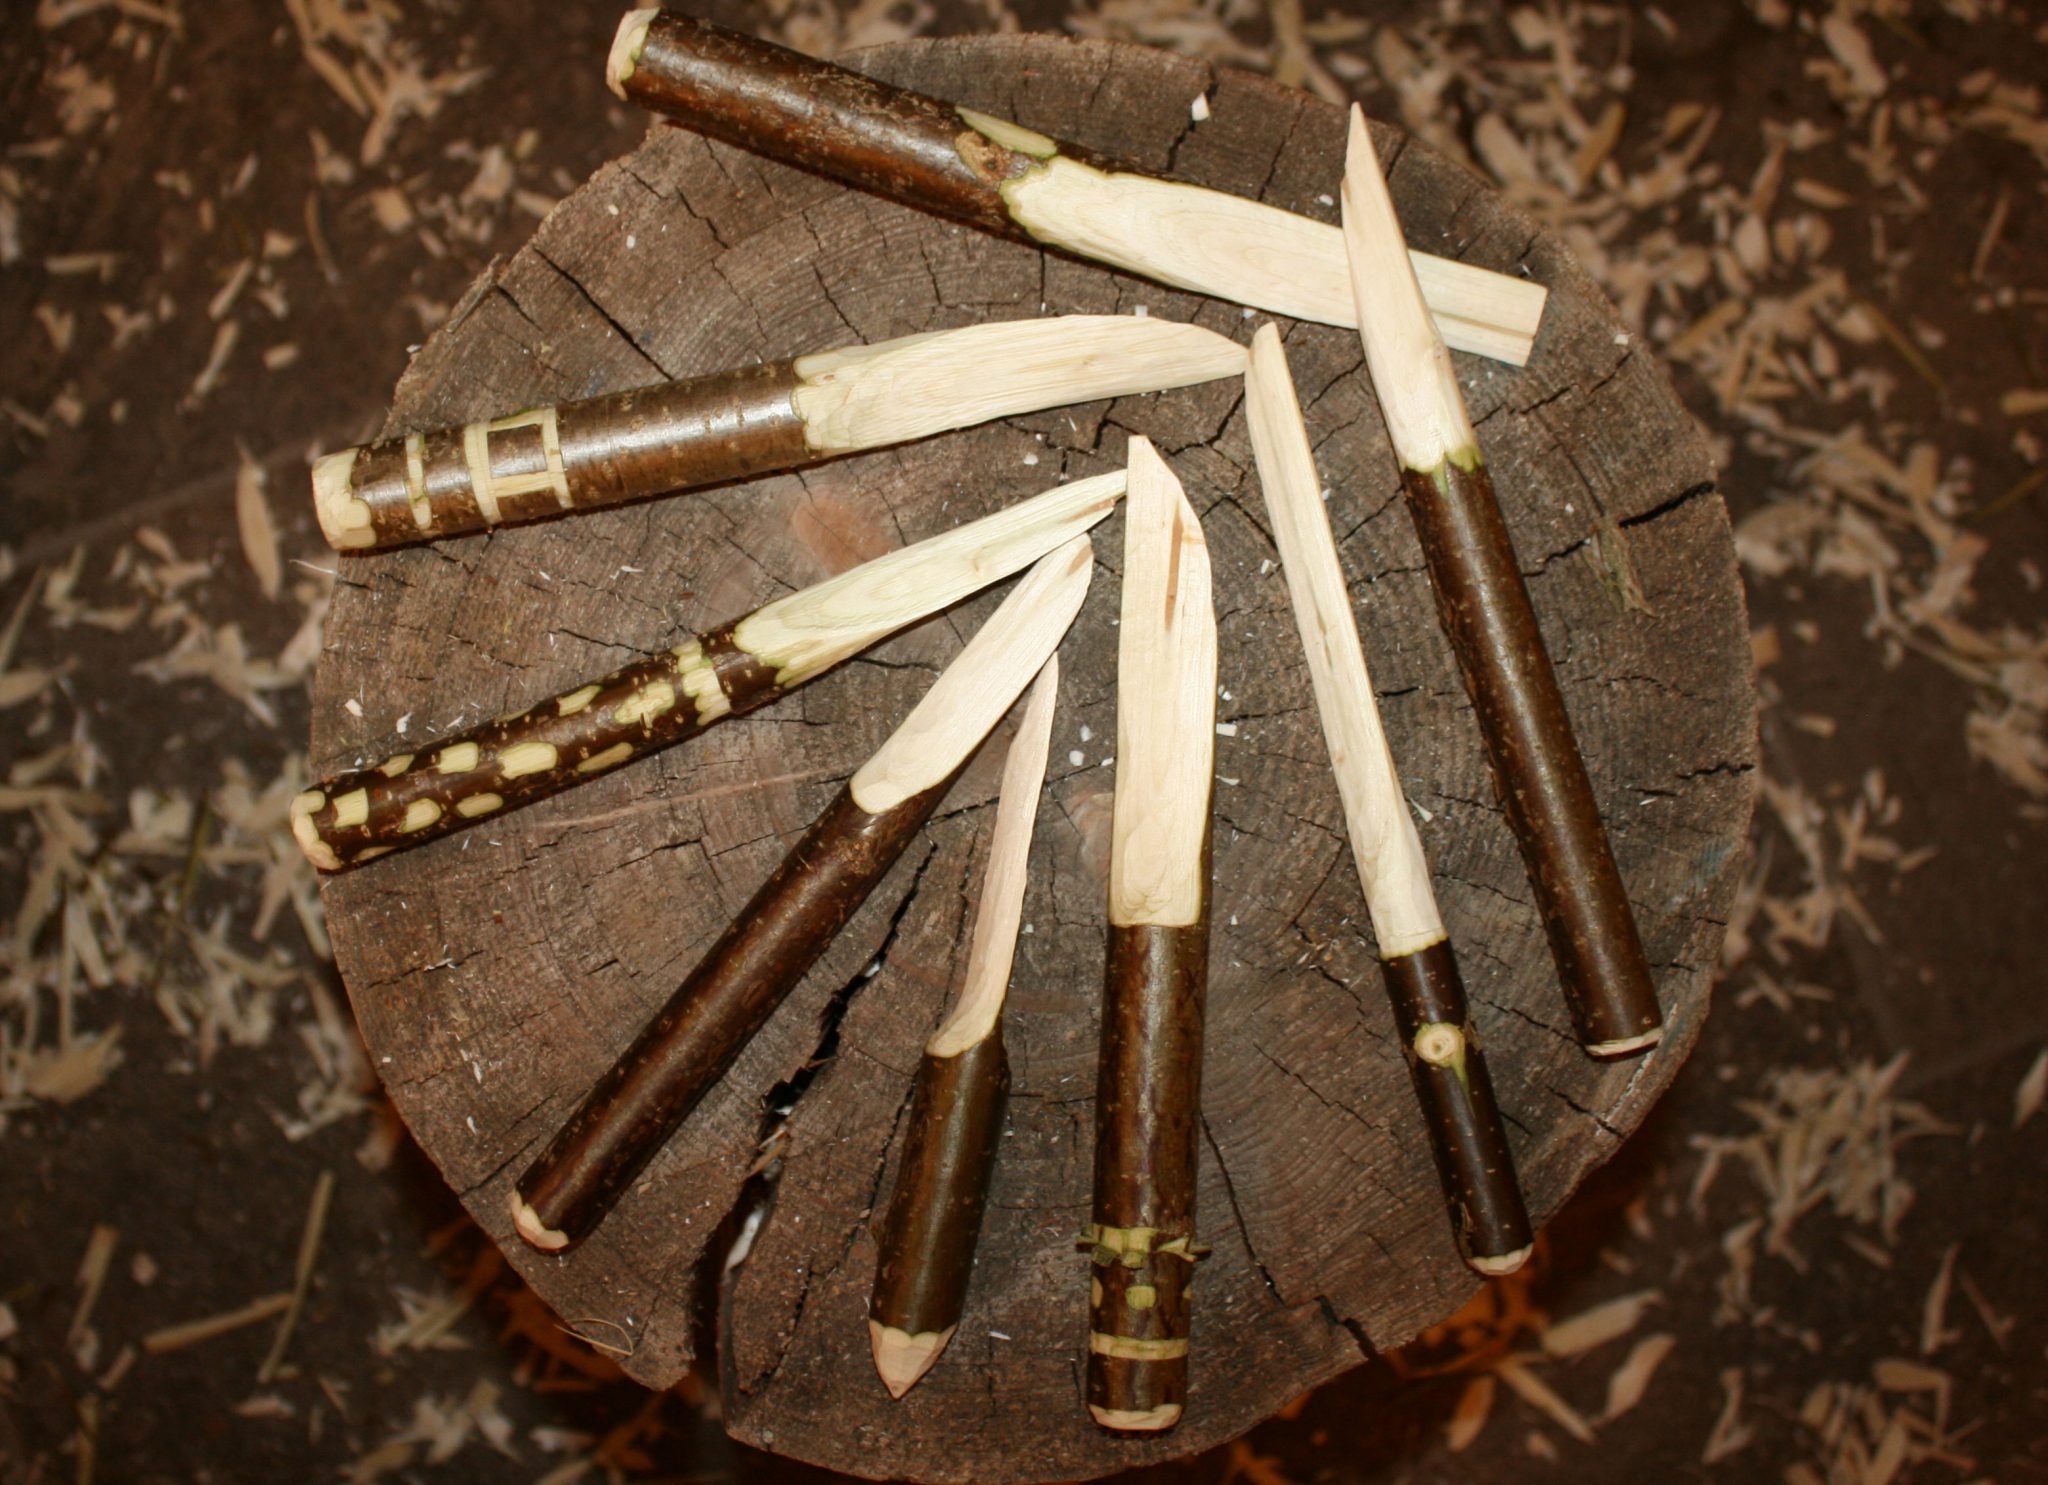 Selbstgeschnitzte Messer aus Holz, die in einem Kreis angeordnet sind.